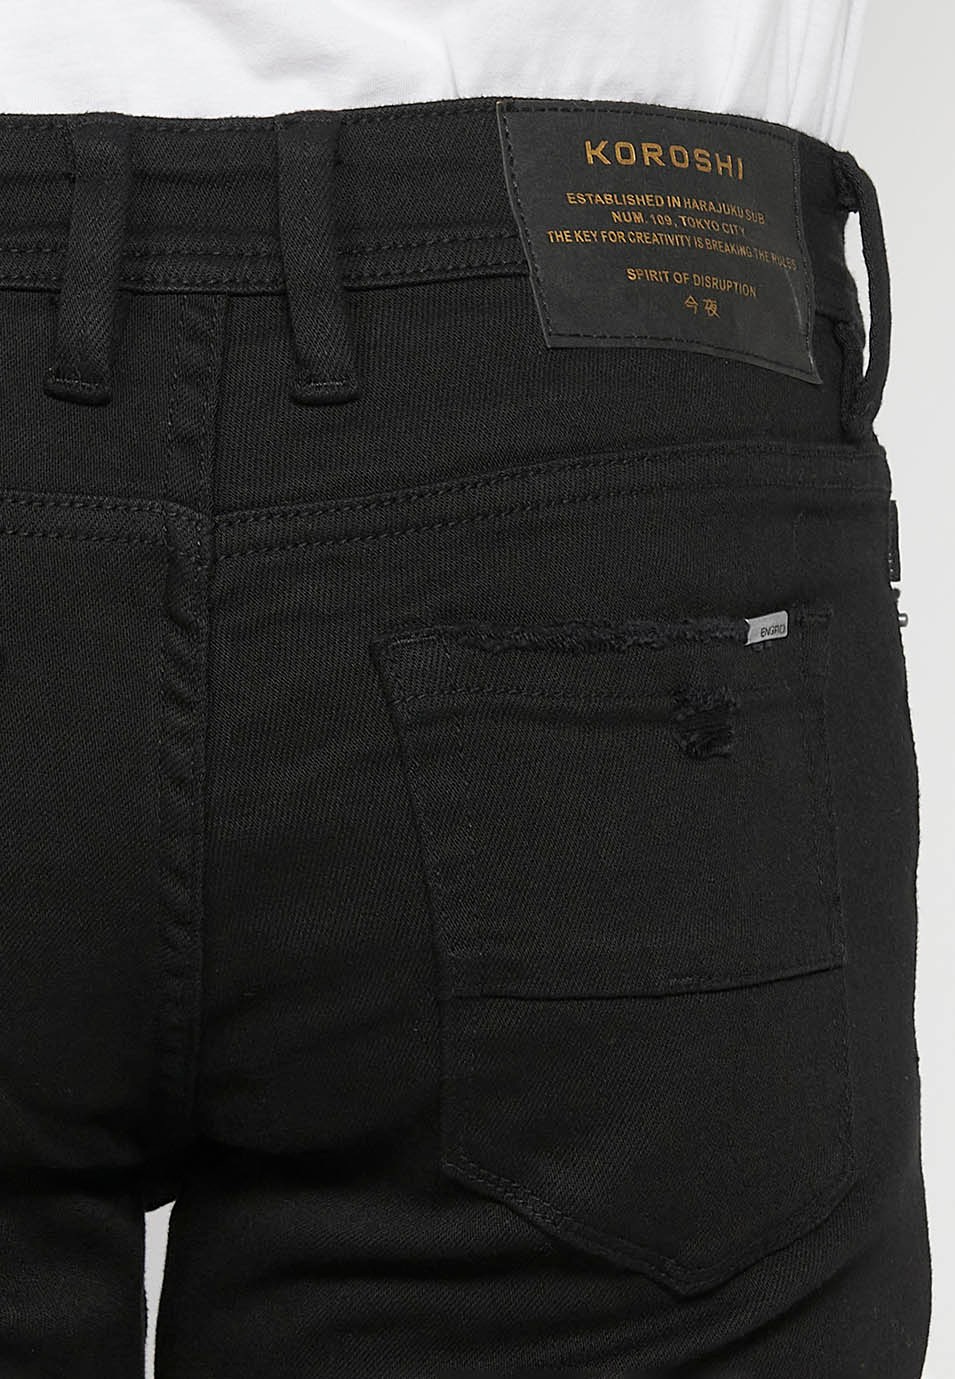 Lange, schmale Super-Skinny-Jeans mit Frontverschluss mit Reißverschluss und Knopf in schwarzer Denim-Farbe für Herren 7